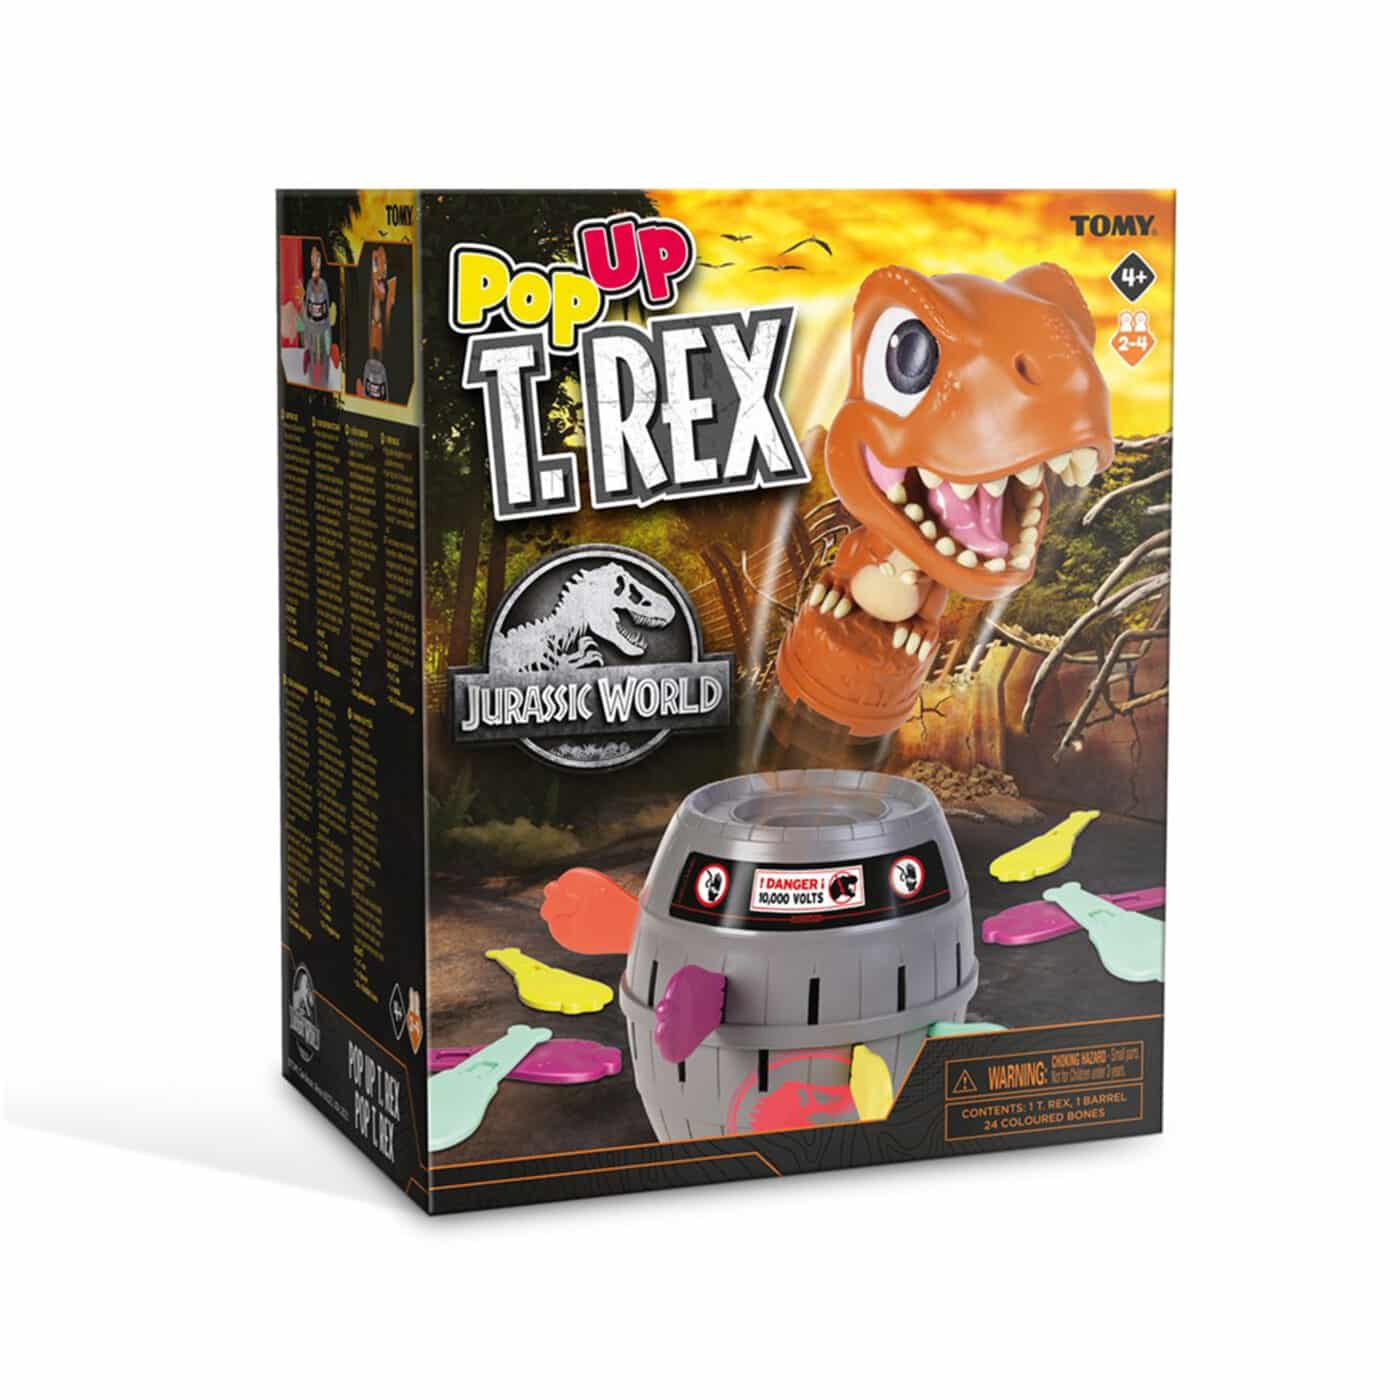 Tomy Jurassic World - Pop Up T-Rex Game